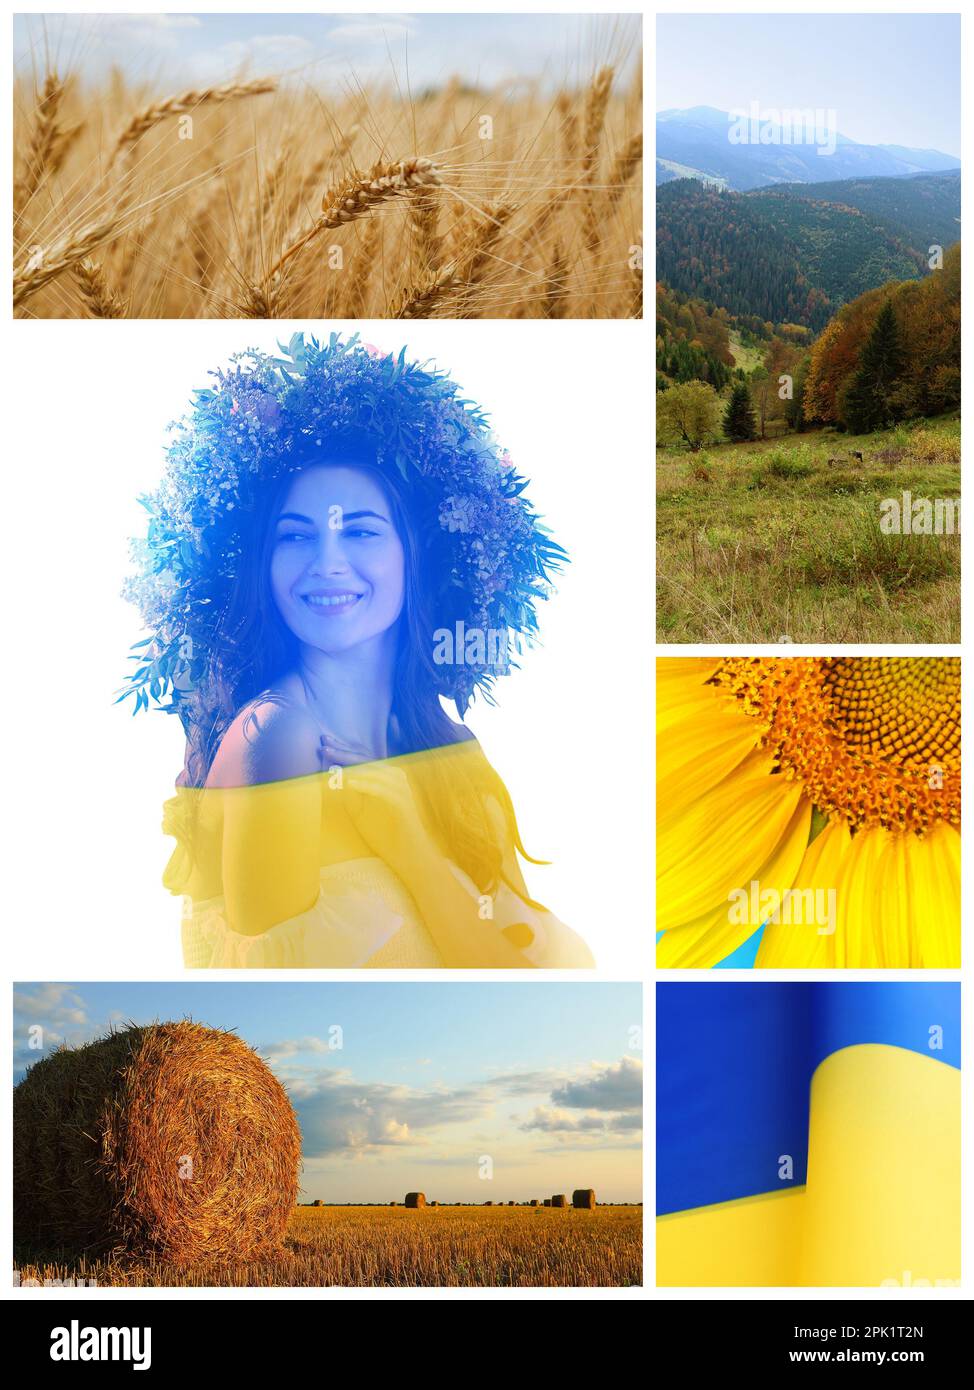 Collage mit verschiedenen wunderschönen Fotos, die der ukrainischen Kultur gewidmet sind Stockfoto